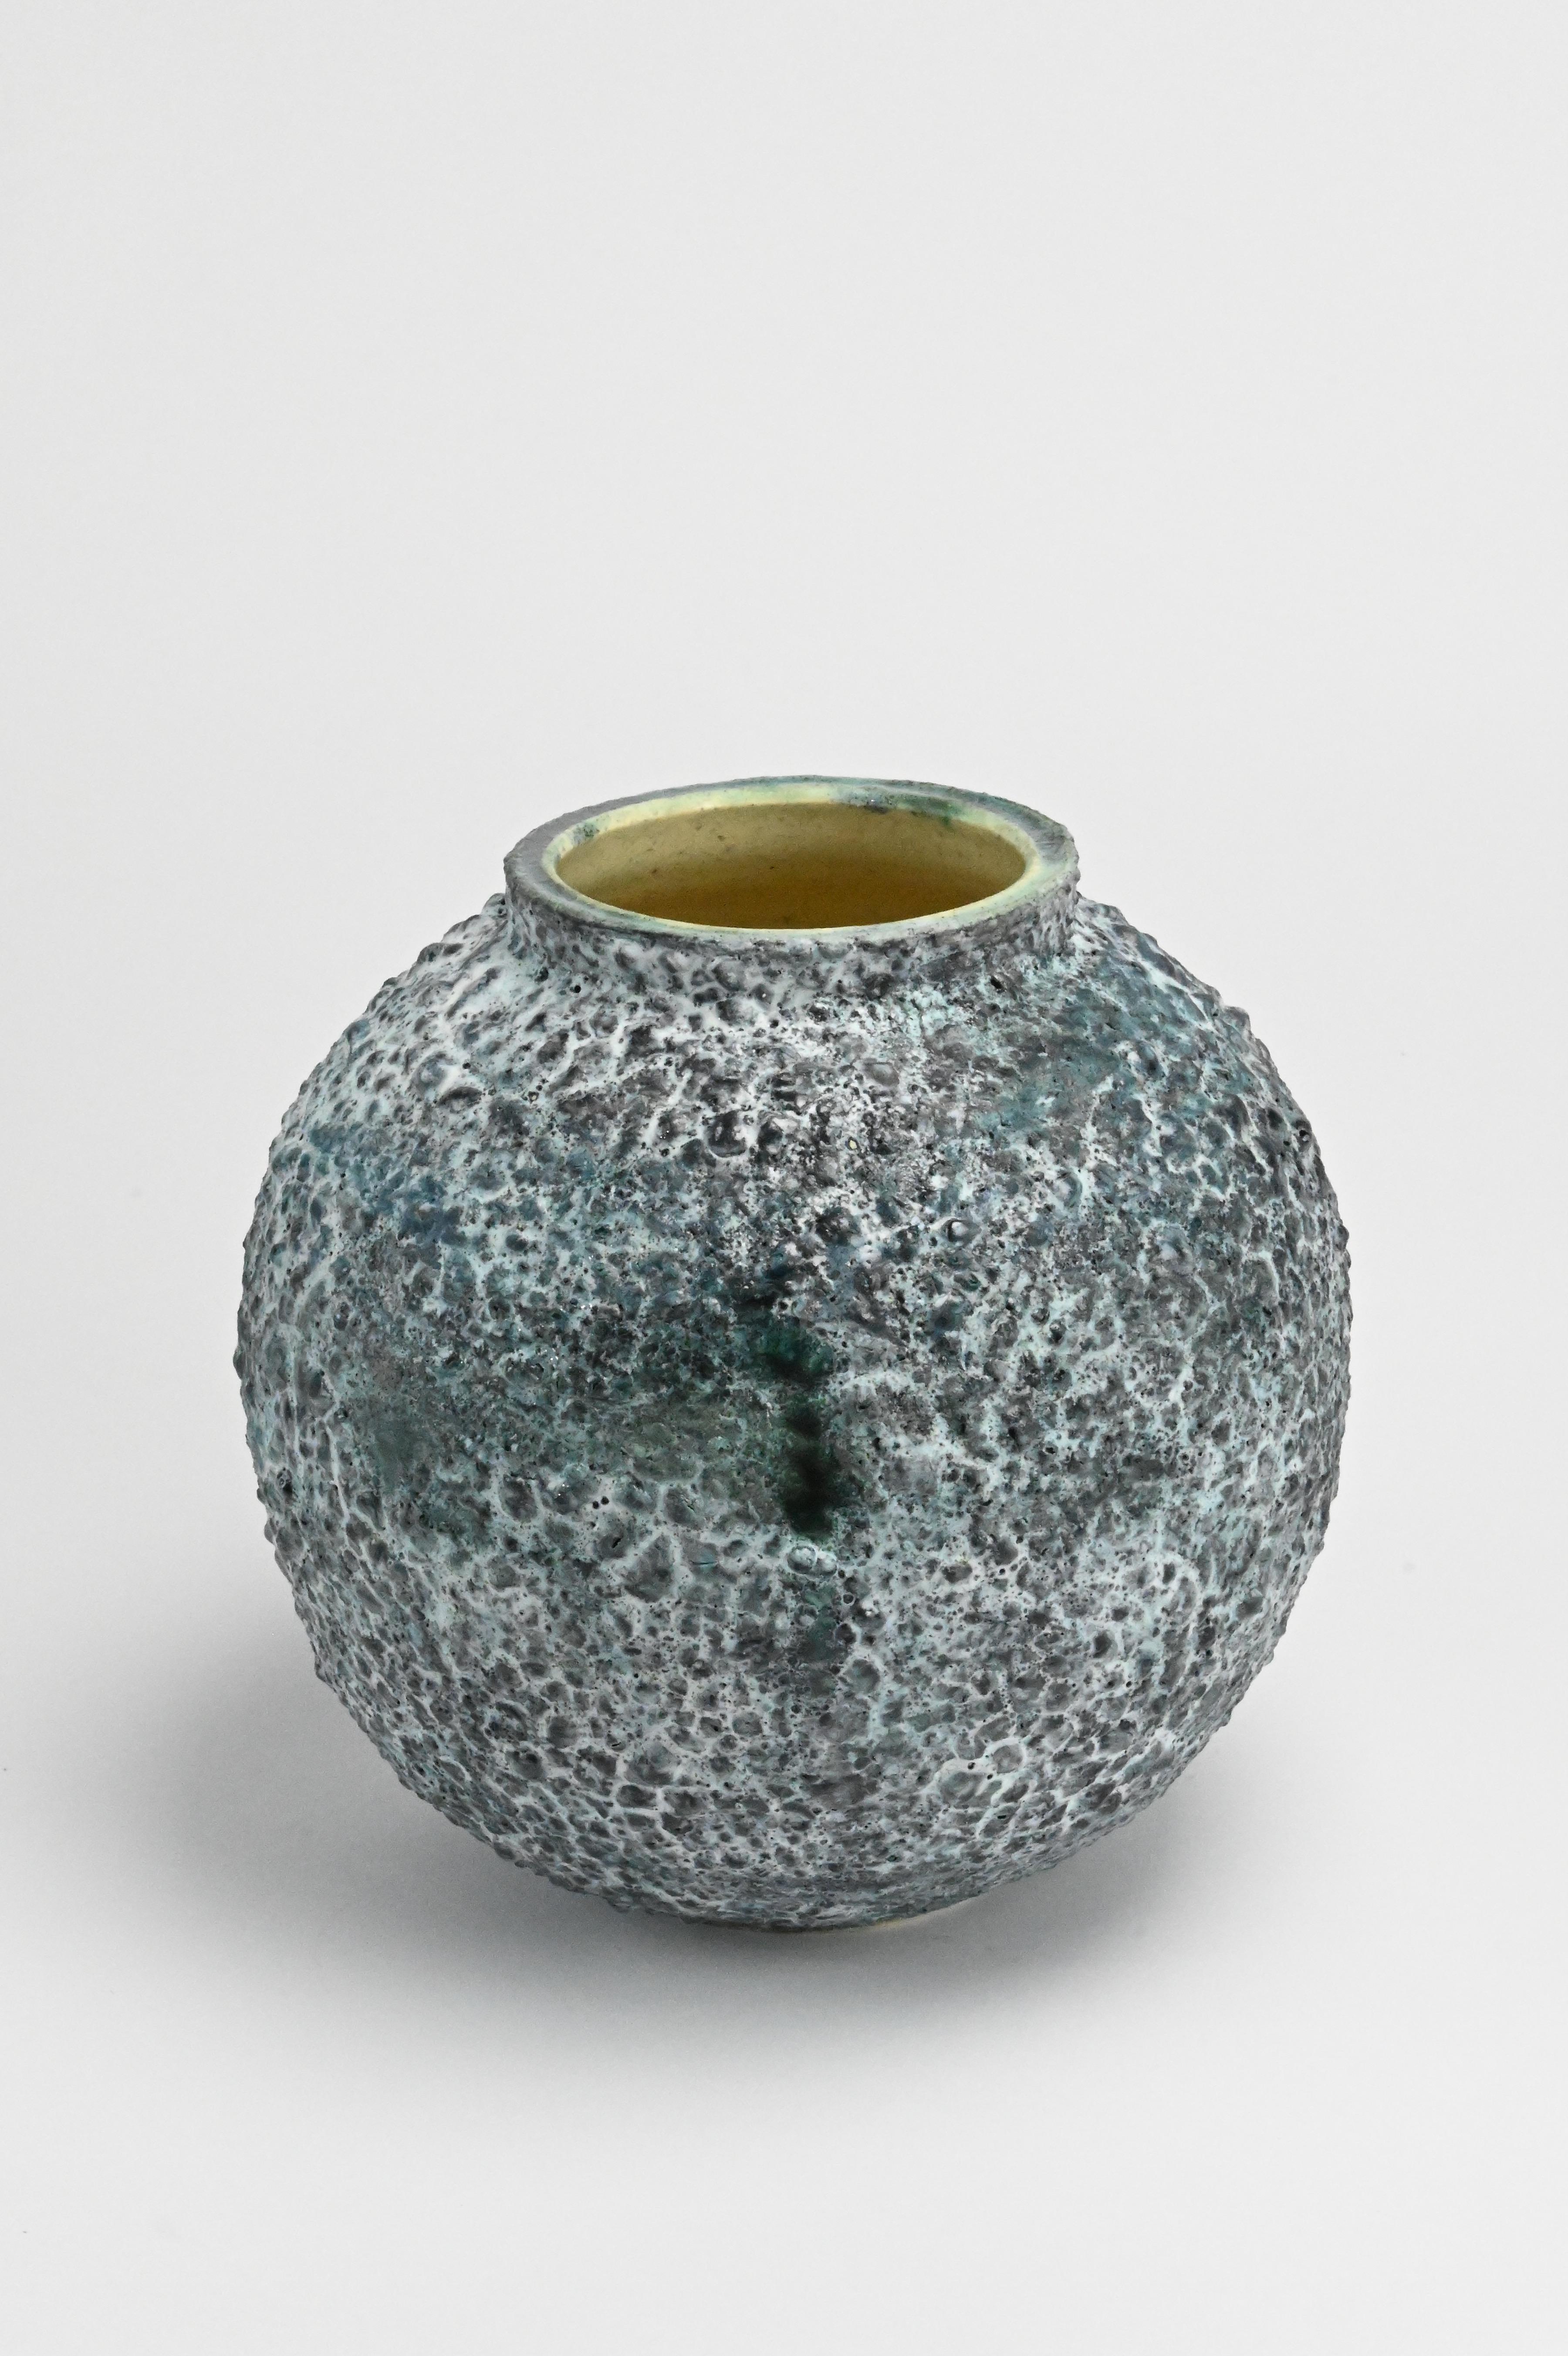 Michael Boroniec Abstract Sculpture - Emerald Quartz Moon Jar - Blue / green abstract ceramic vessel